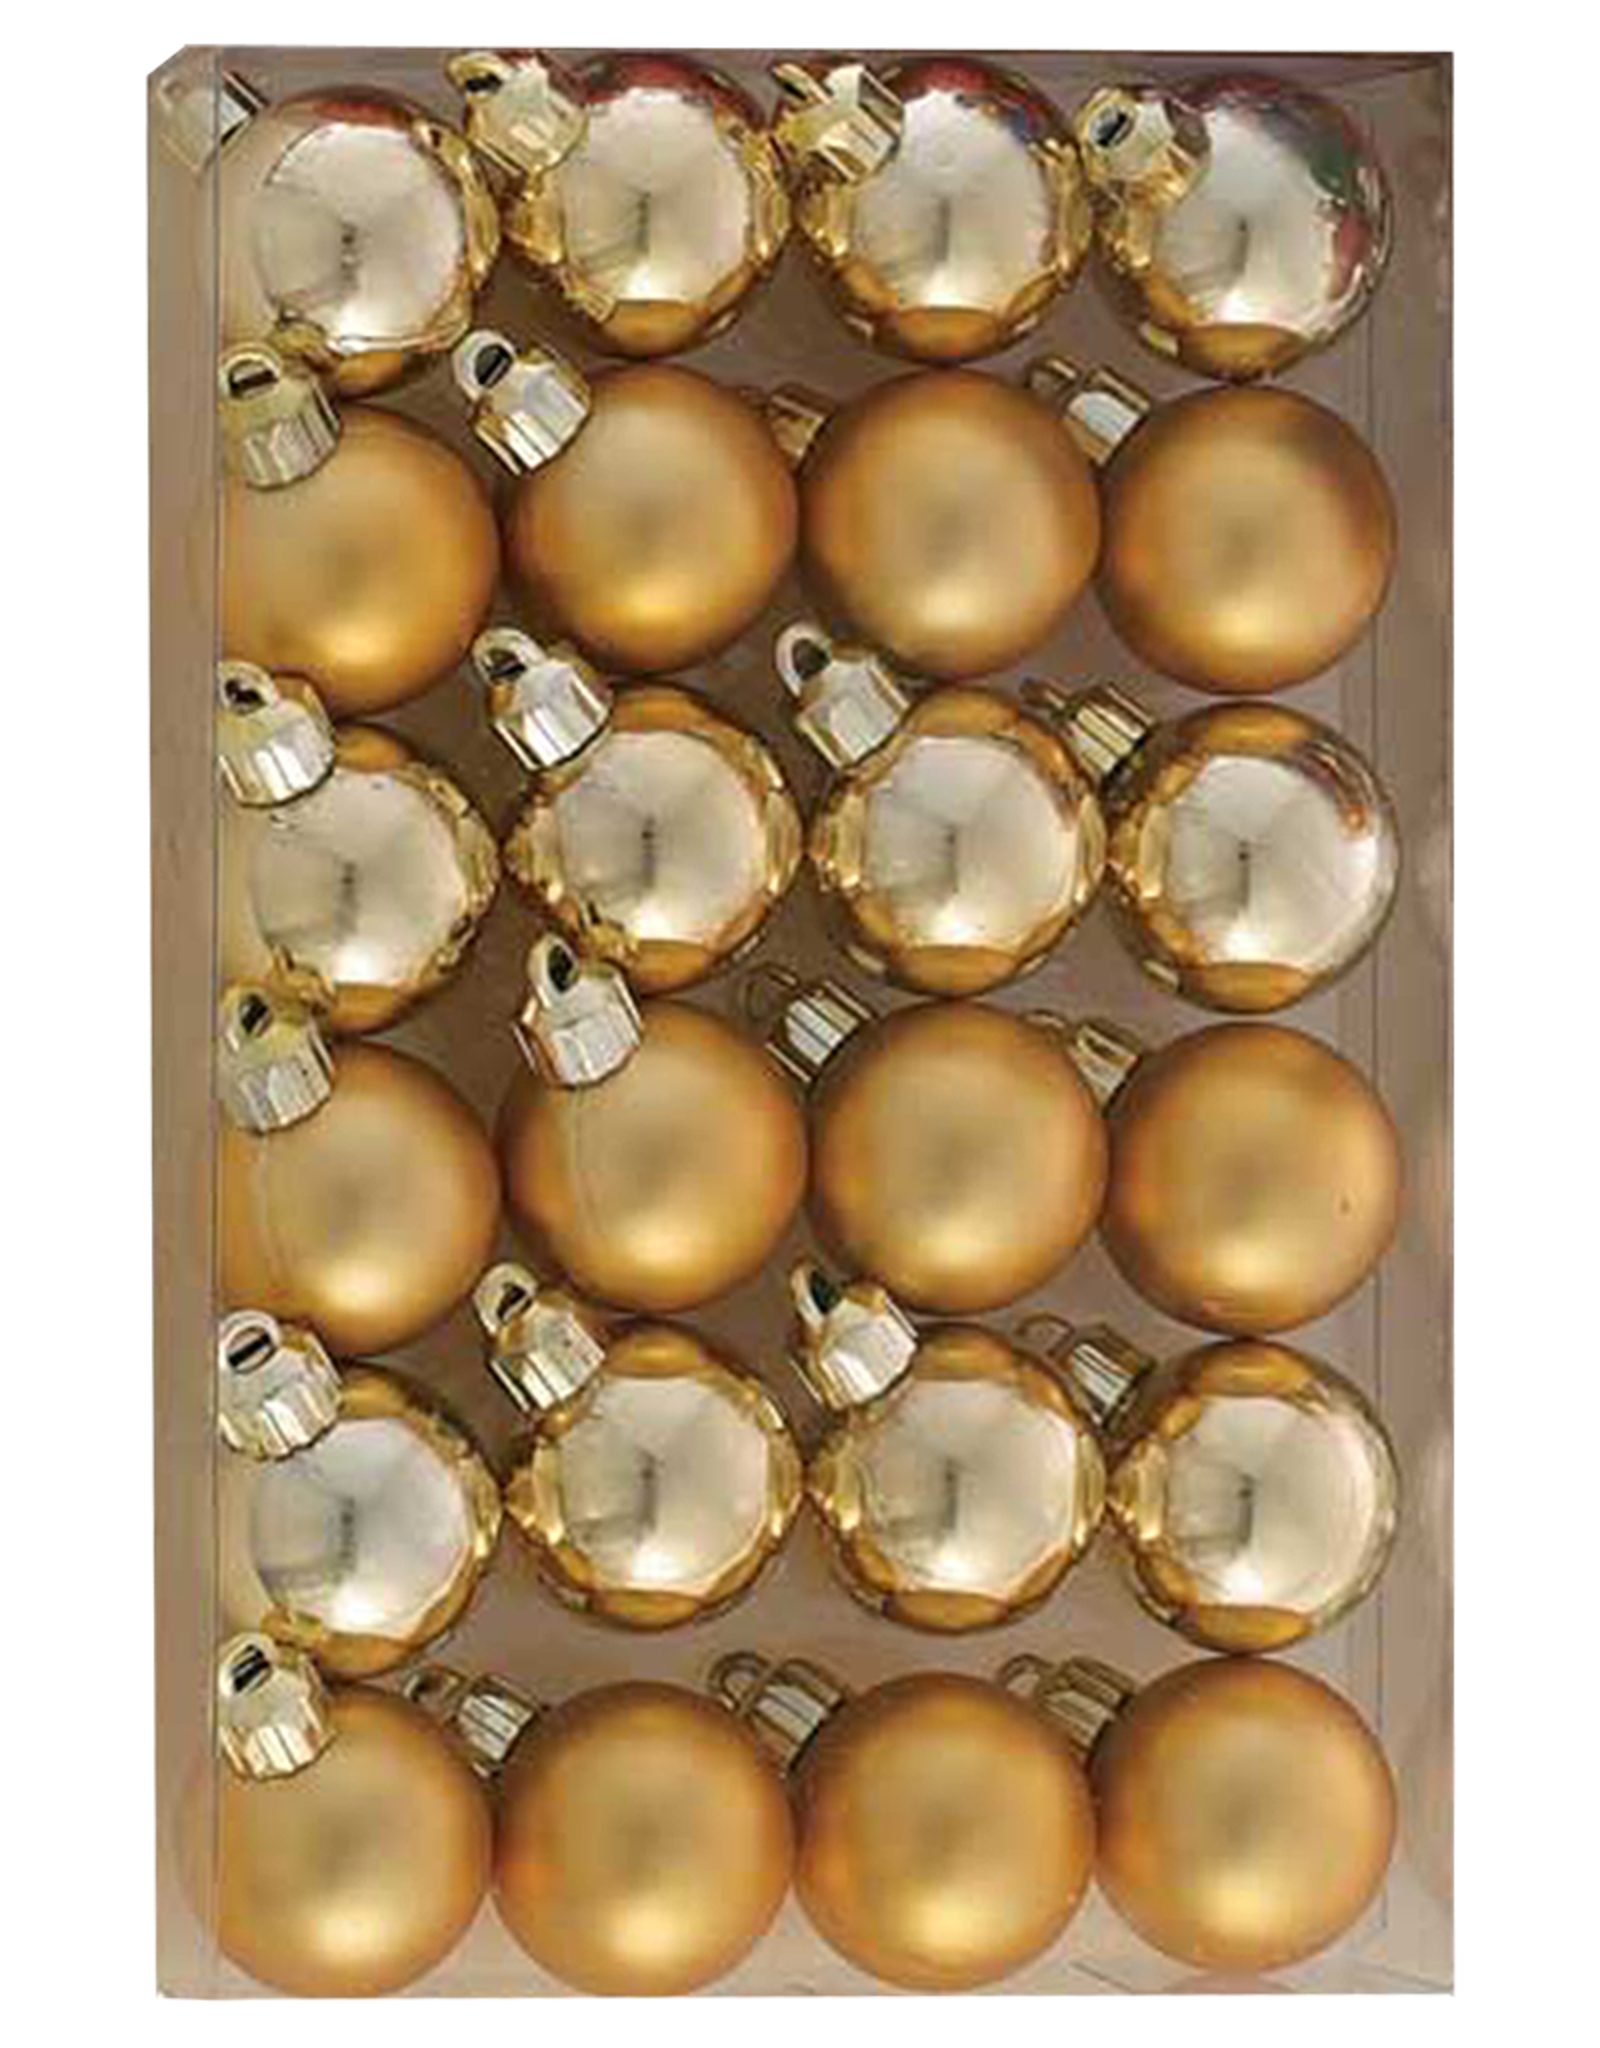 Kurt Adler Miniature Shatterproof Ball Ornaments 24pc 30MM Gold